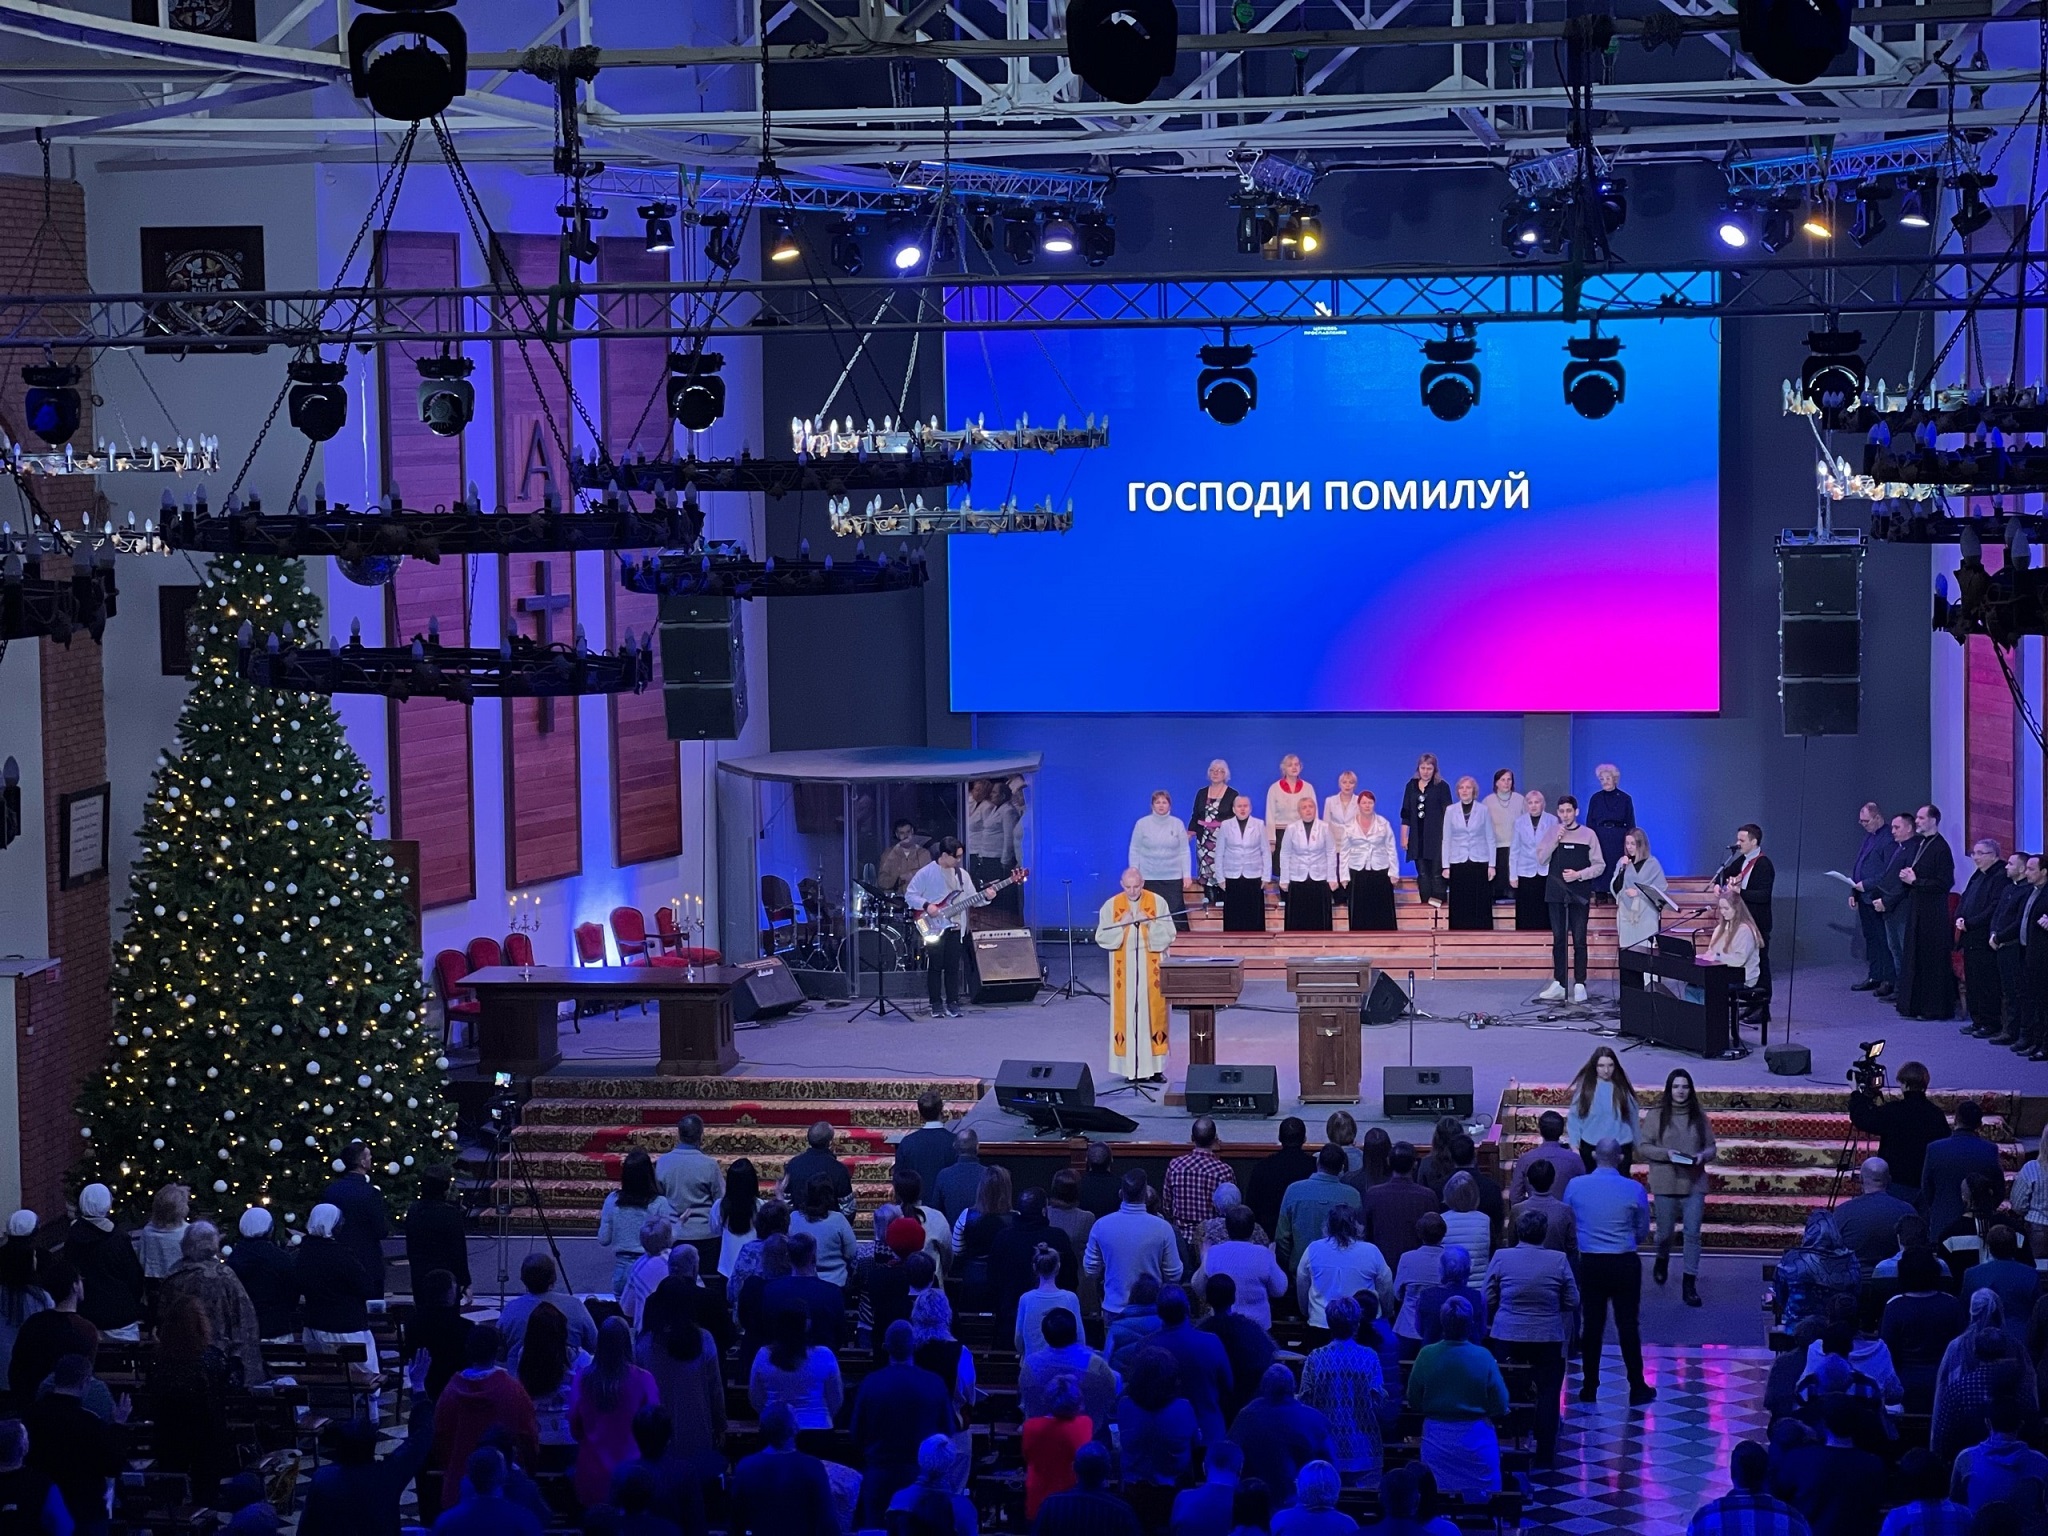 Экуменическая молитва о христианском единстве прошла в Томске (ФОТО + ВИДЕО)